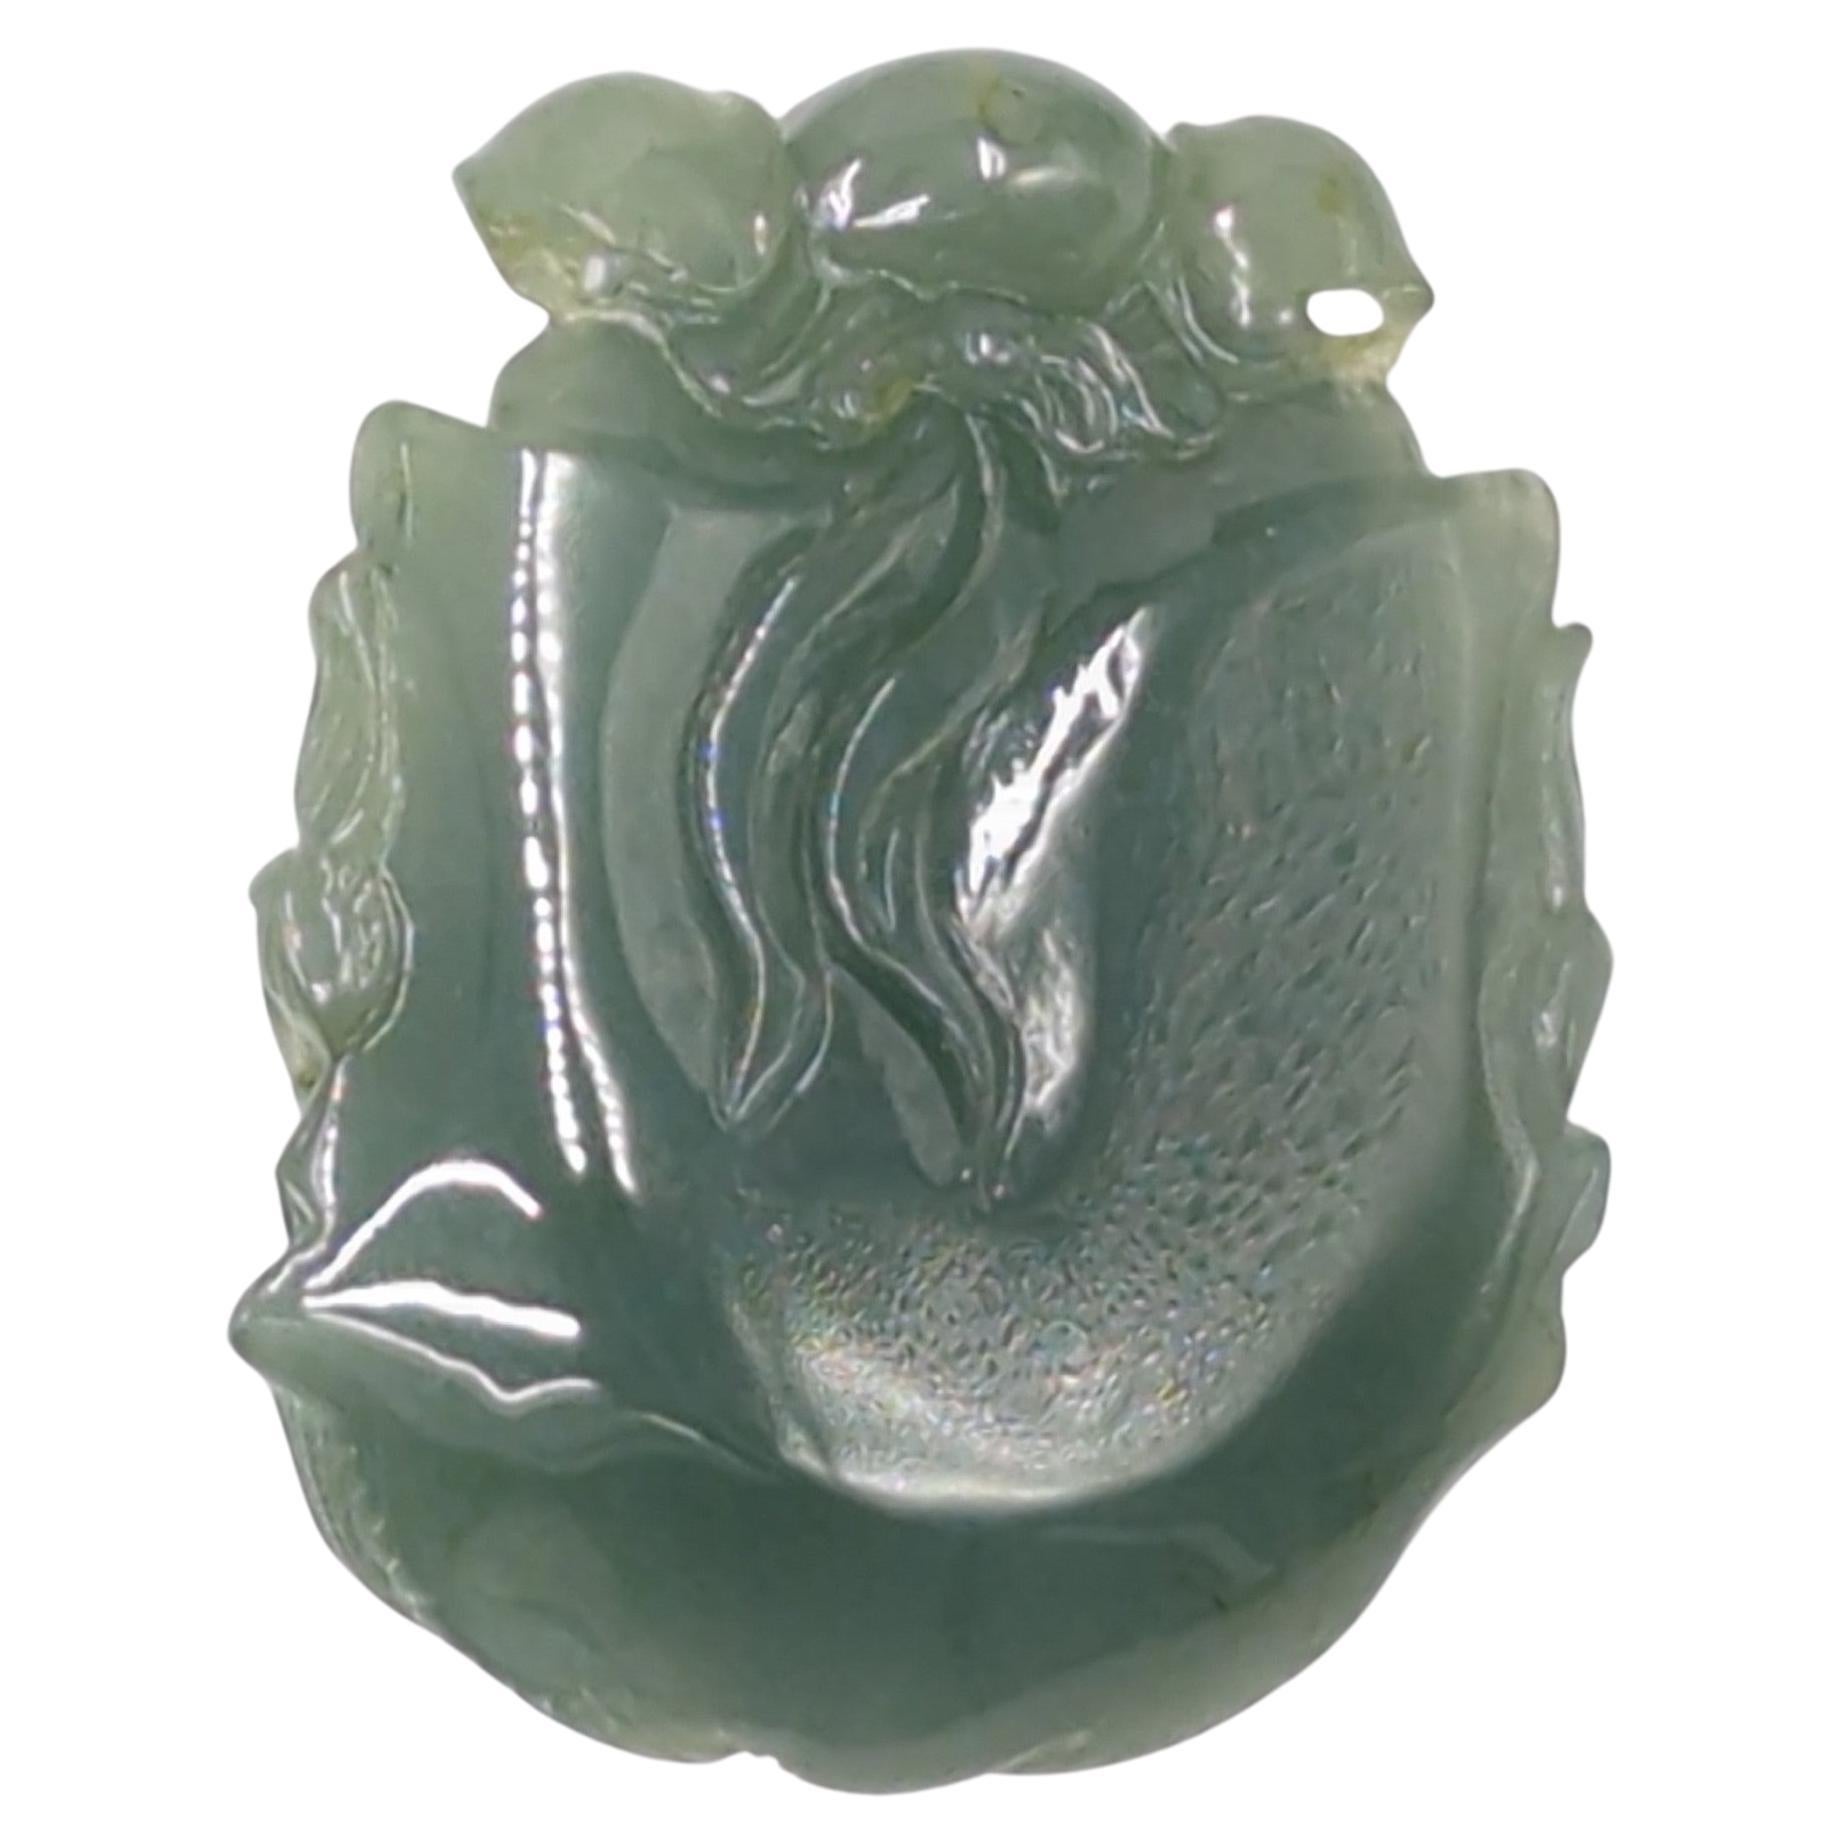 Eine große chinesische Suzhou Workshop Meister handgeschnitzten Jadeit (natürliche A-Grad) Anhänger in Form von Zhong Kui (Demon Queller in der chinesischen Mythologie) Kopf. Die Details dieses beeindruckenden Anhängers sind sehr fein geschnitzt,